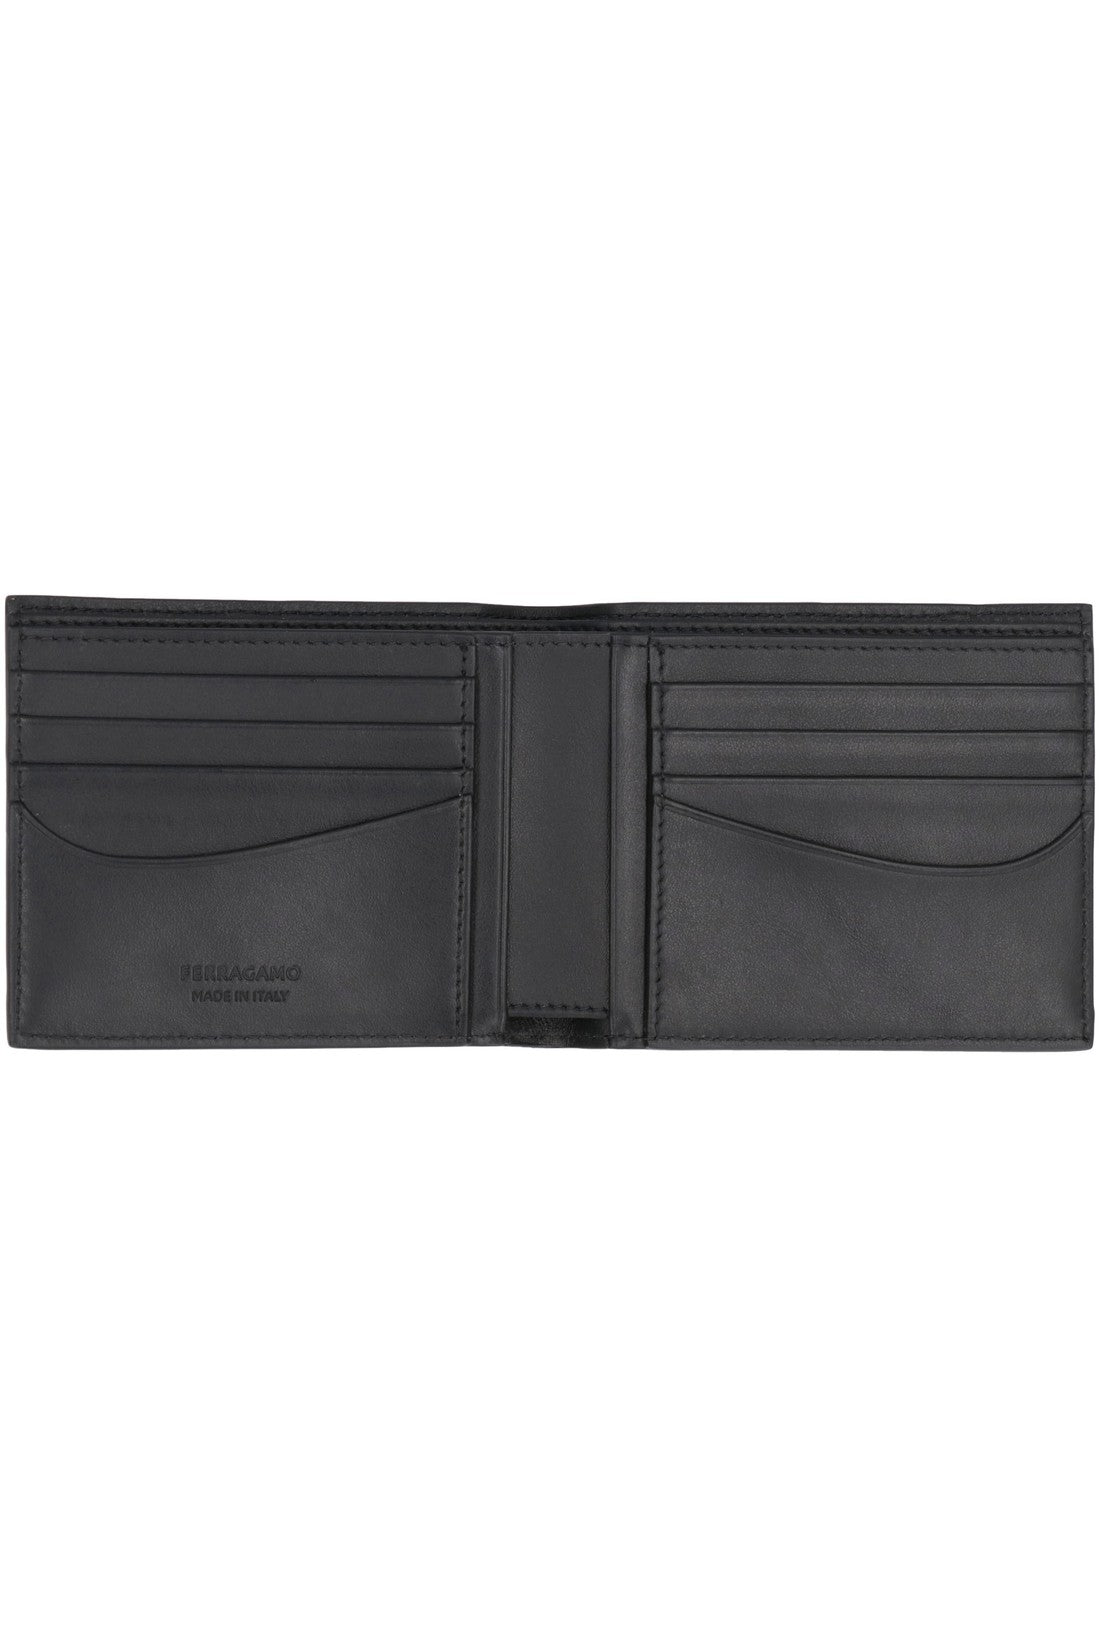 FERRAGAMO-OUTLET-SALE-Leather flap-over wallet-ARCHIVIST